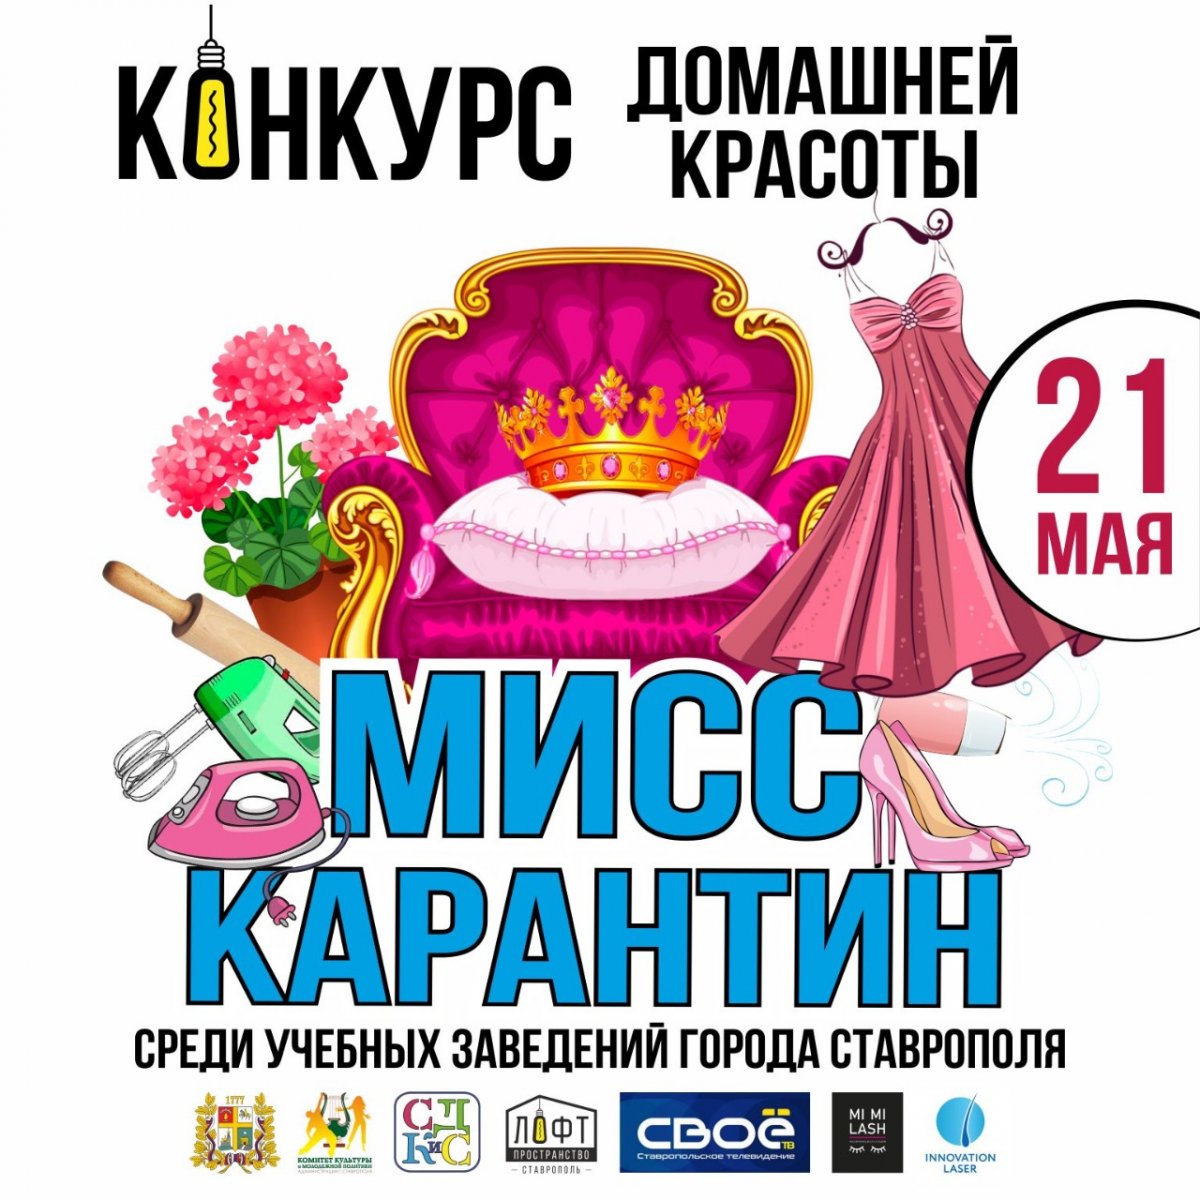 Конкурс красоты на самоизоляции Мисс «Карантин» среди учебных заведений города Ставрополя пройдет уже 21 мая в прямом эфире @komitet_26.cdkis